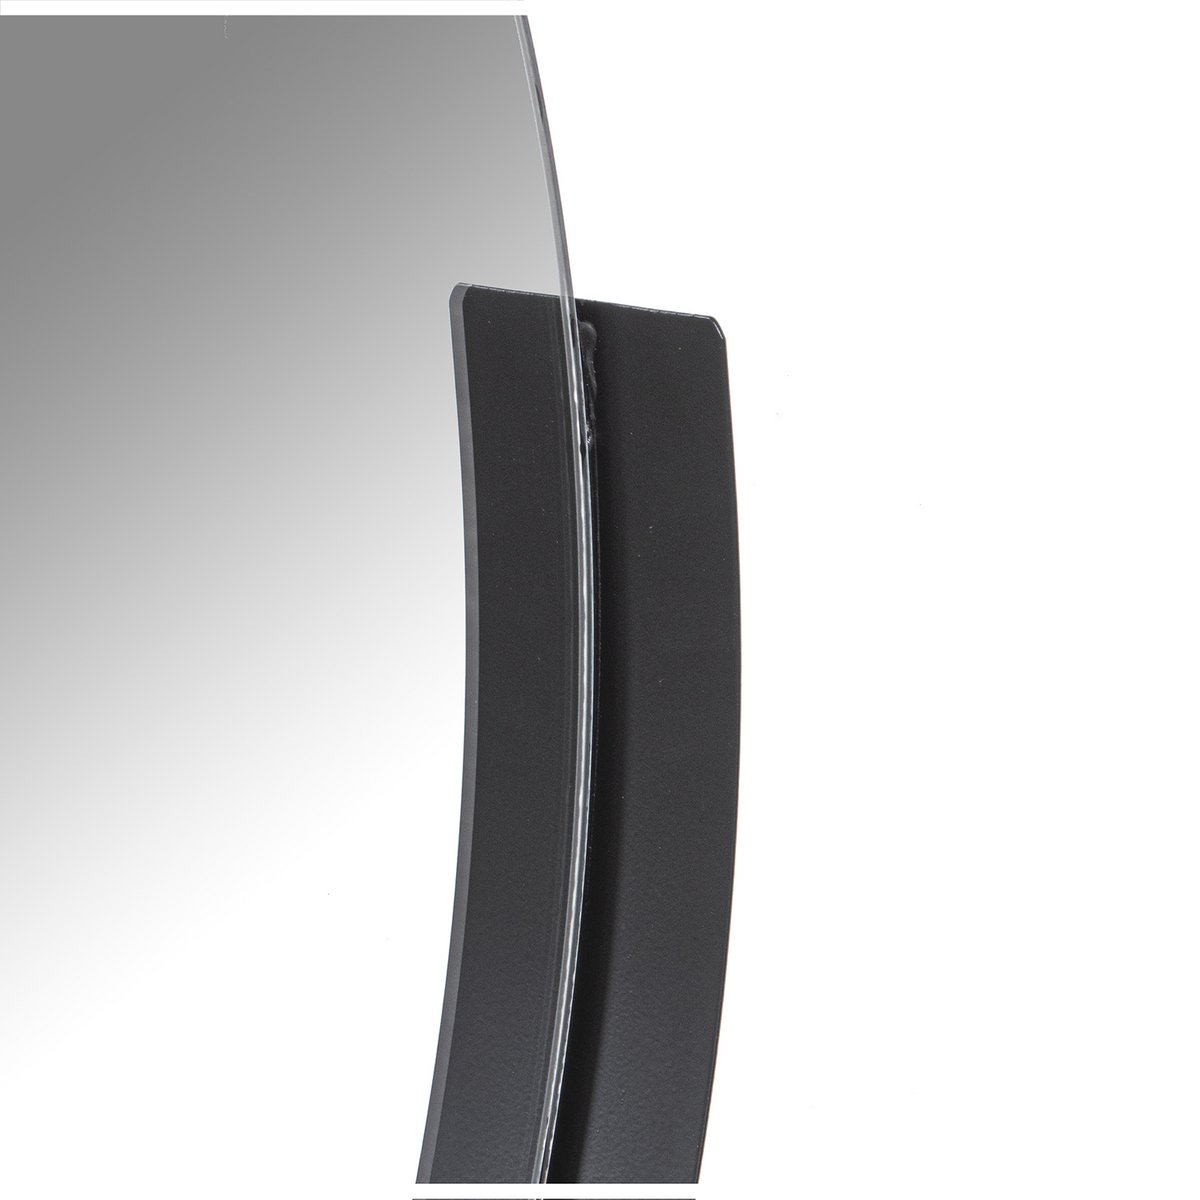 Spiegel aus schwarzem Metall, rund, Wandspiegel, moderner Wandschmuck